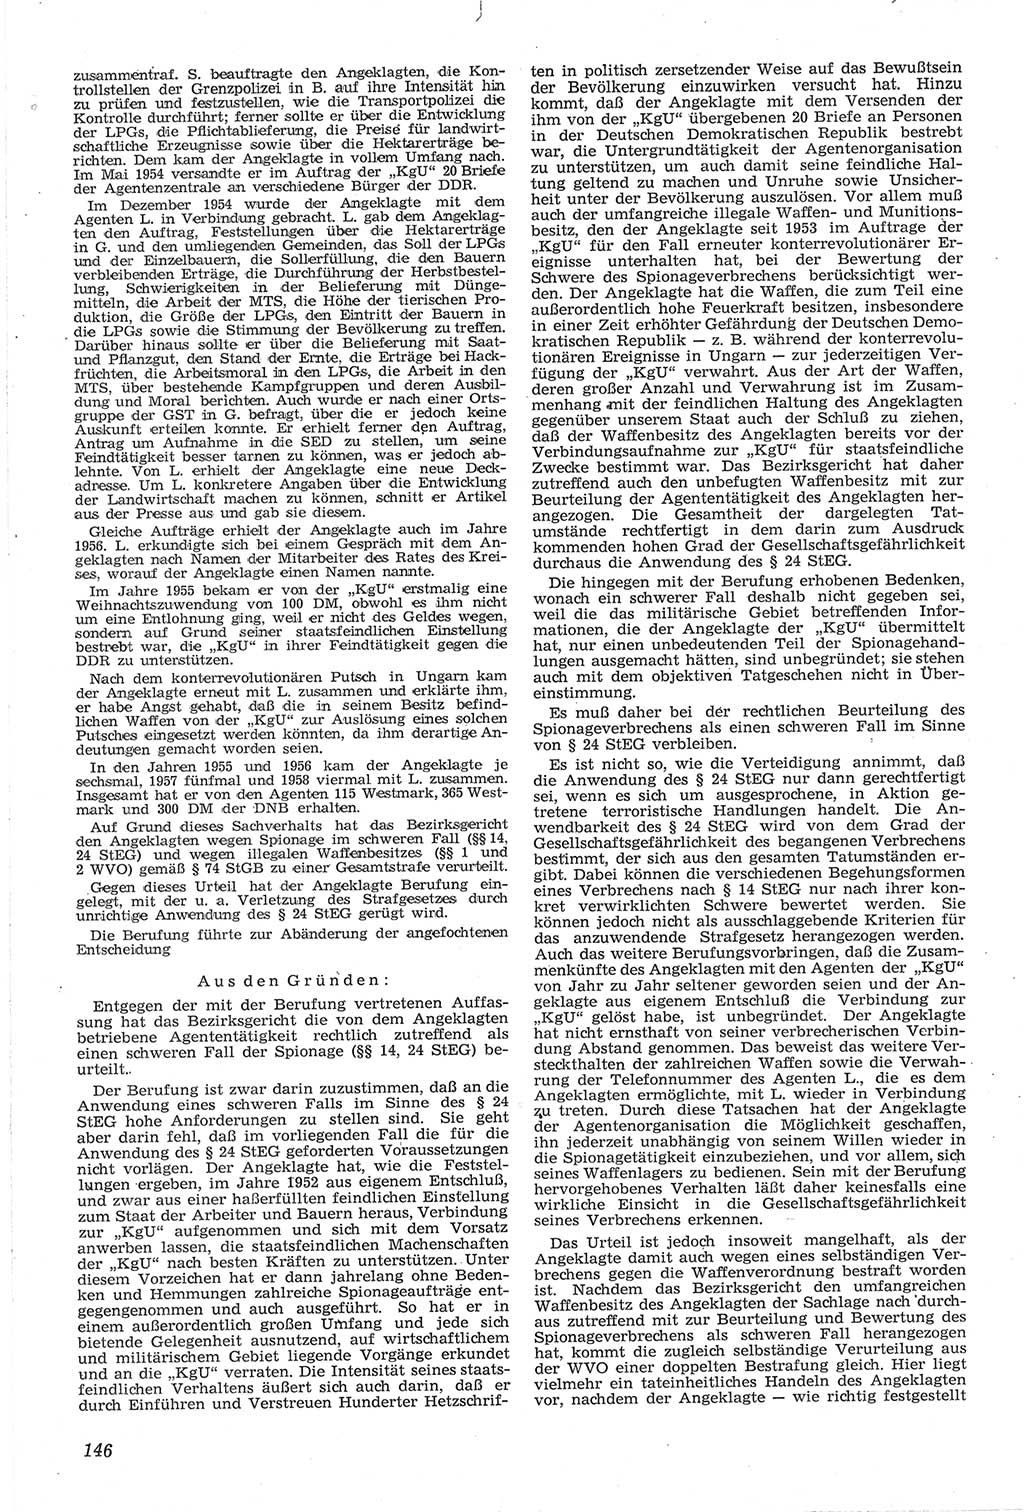 Neue Justiz (NJ), Zeitschrift für Recht und Rechtswissenschaft [Deutsche Demokratische Republik (DDR)], 14. Jahrgang 1960, Seite 146 (NJ DDR 1960, S. 146)